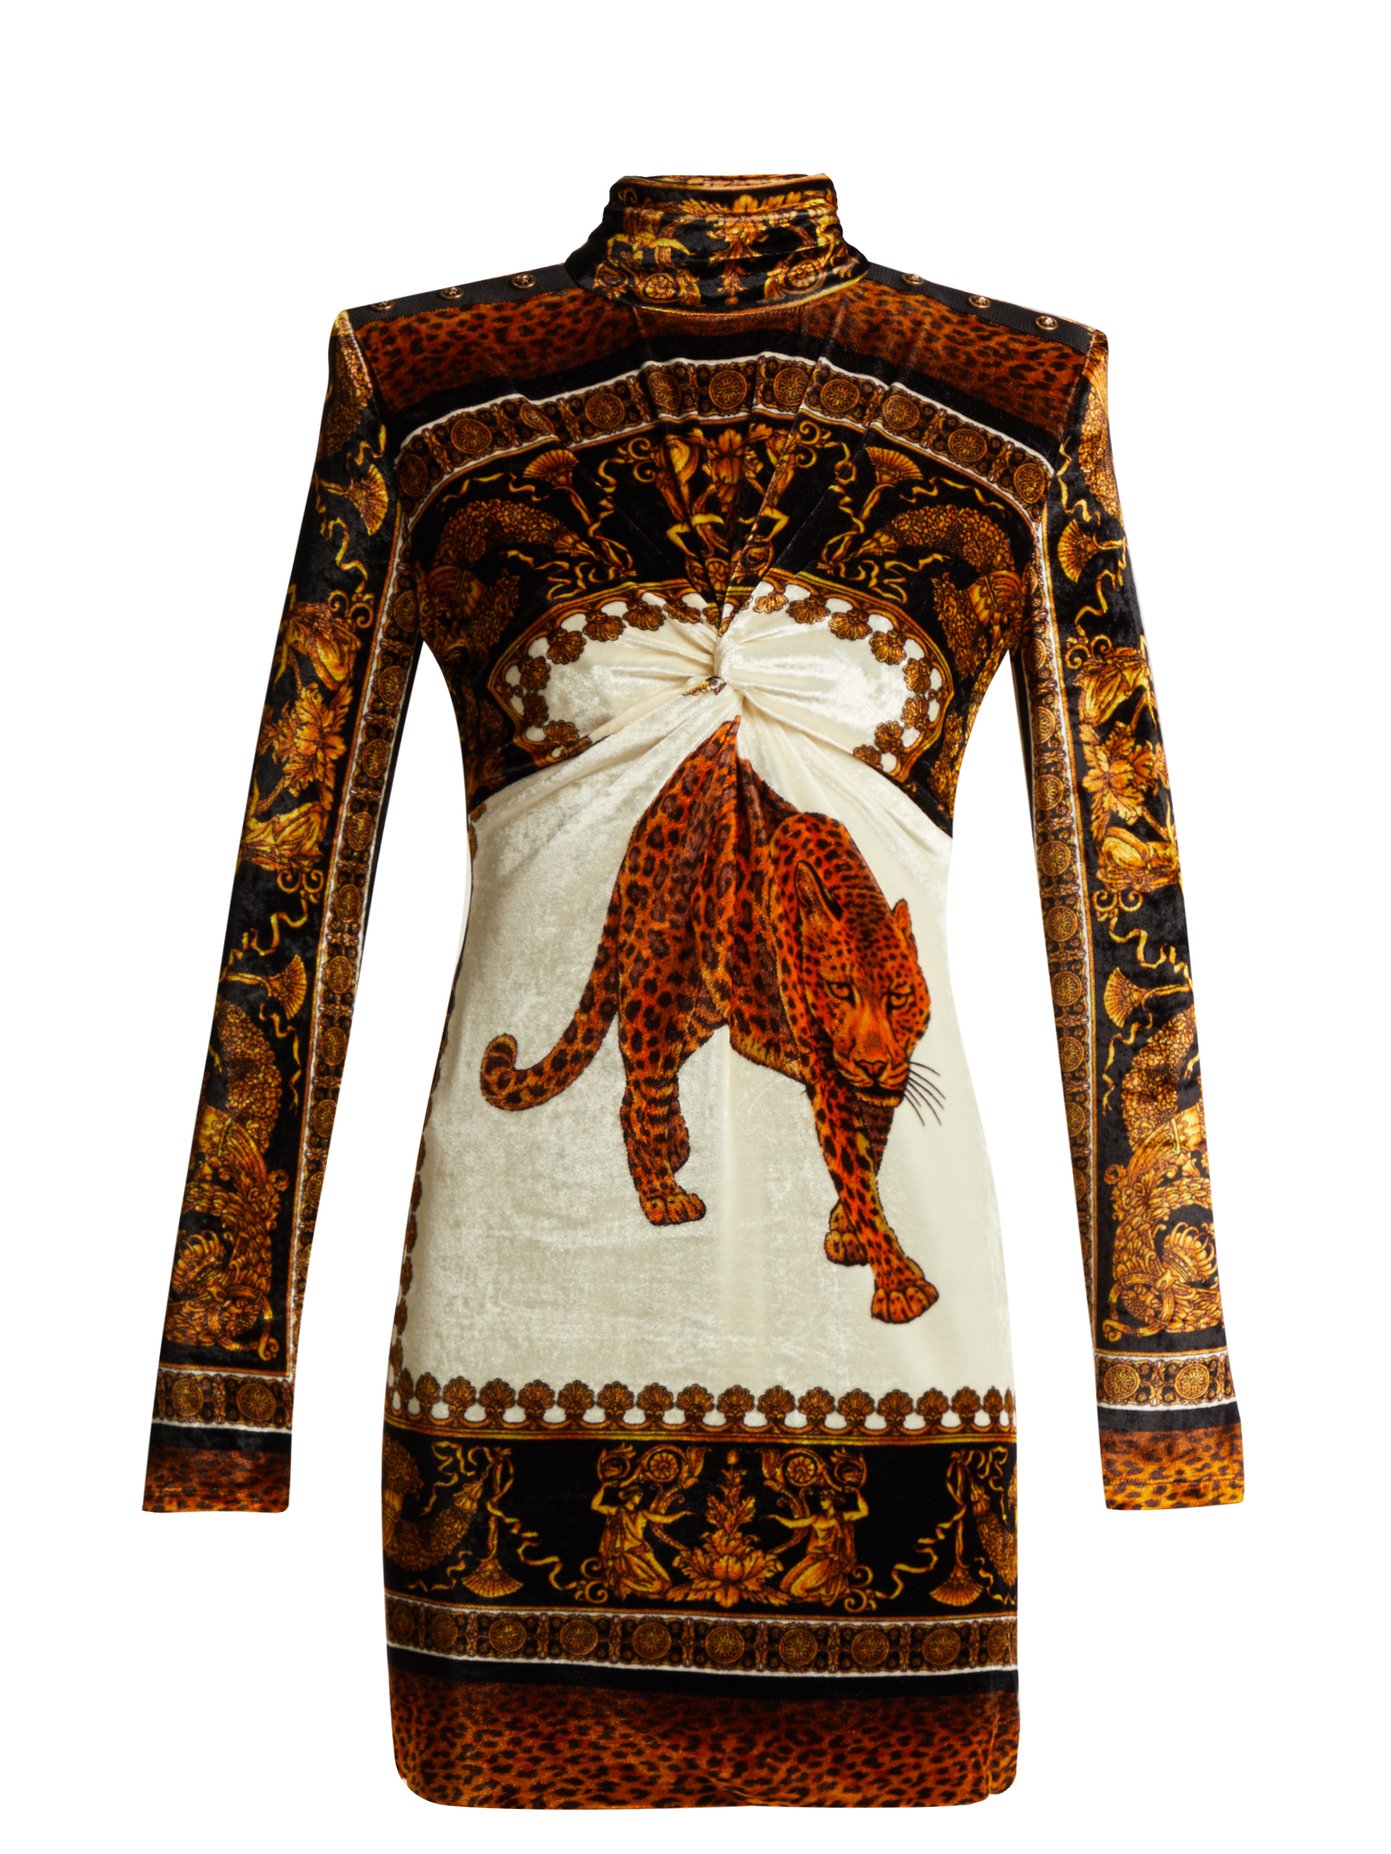 versace leopard dress